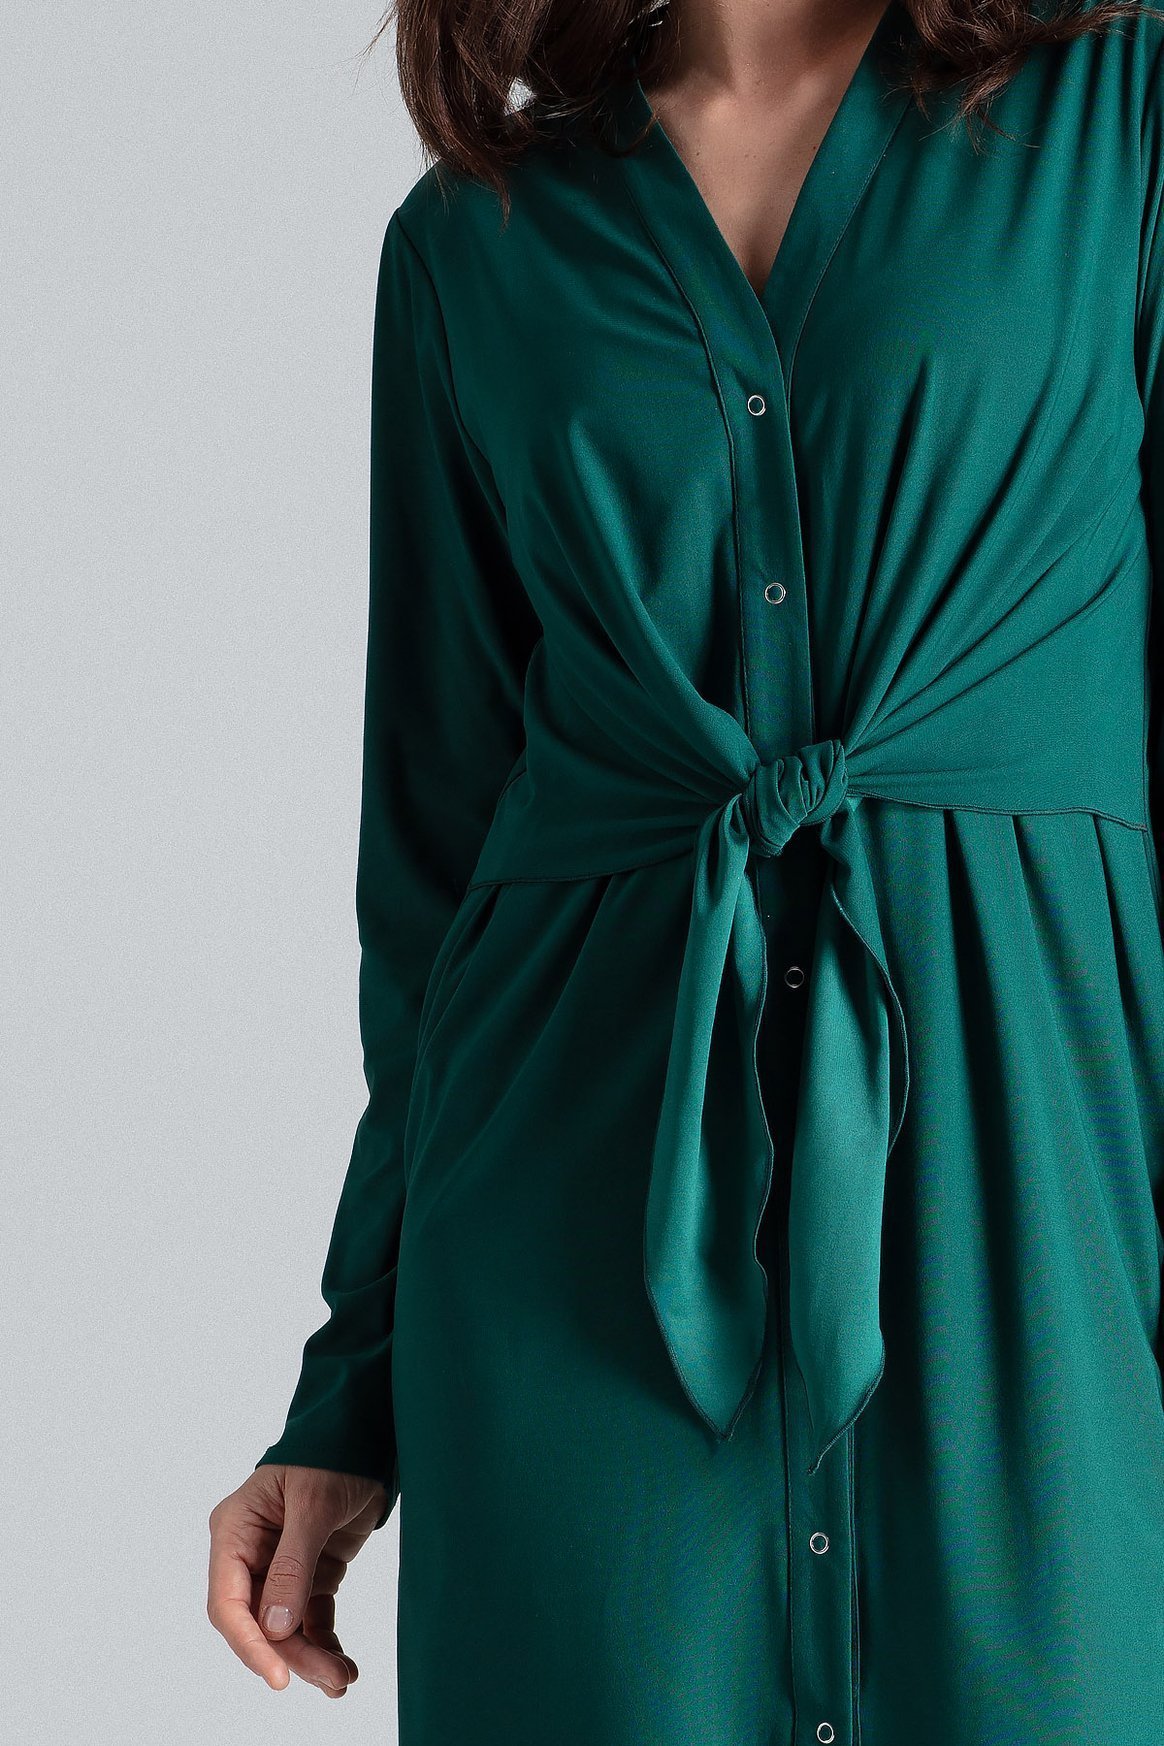 Opis: Sukienka koszulowa szmizjerka z wiązaniem w pasie butelkowa zieleń.